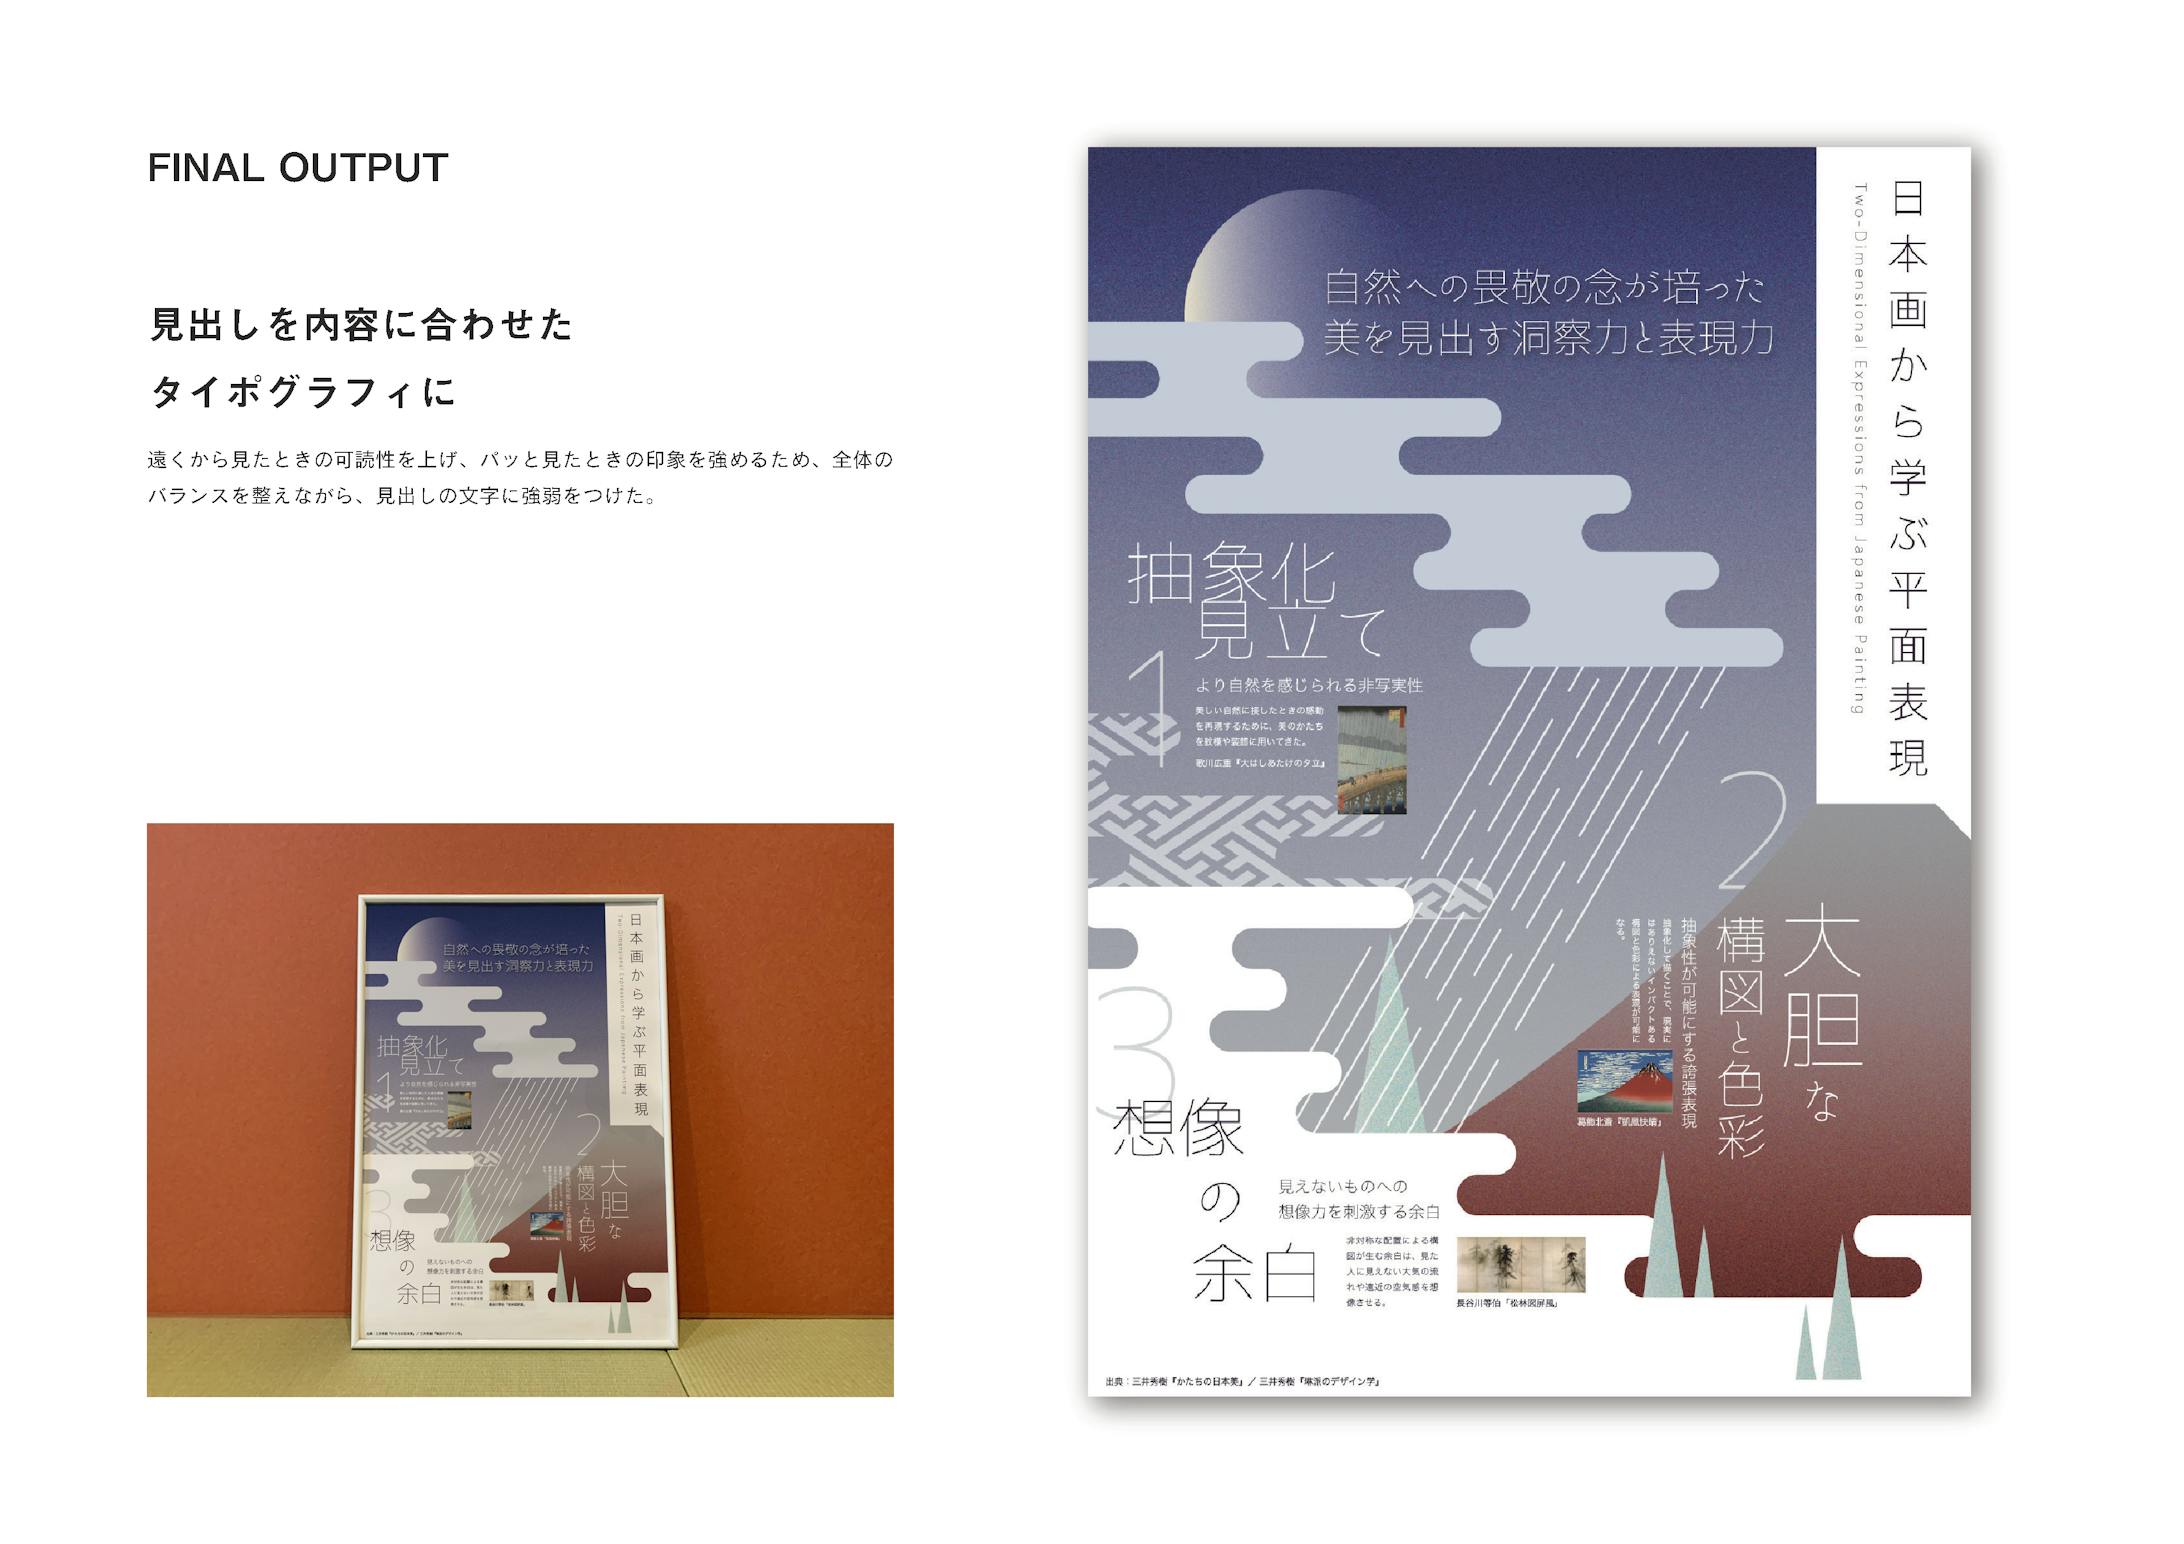 インフォグラフィック『日本画から学ぶ平面表現』-5